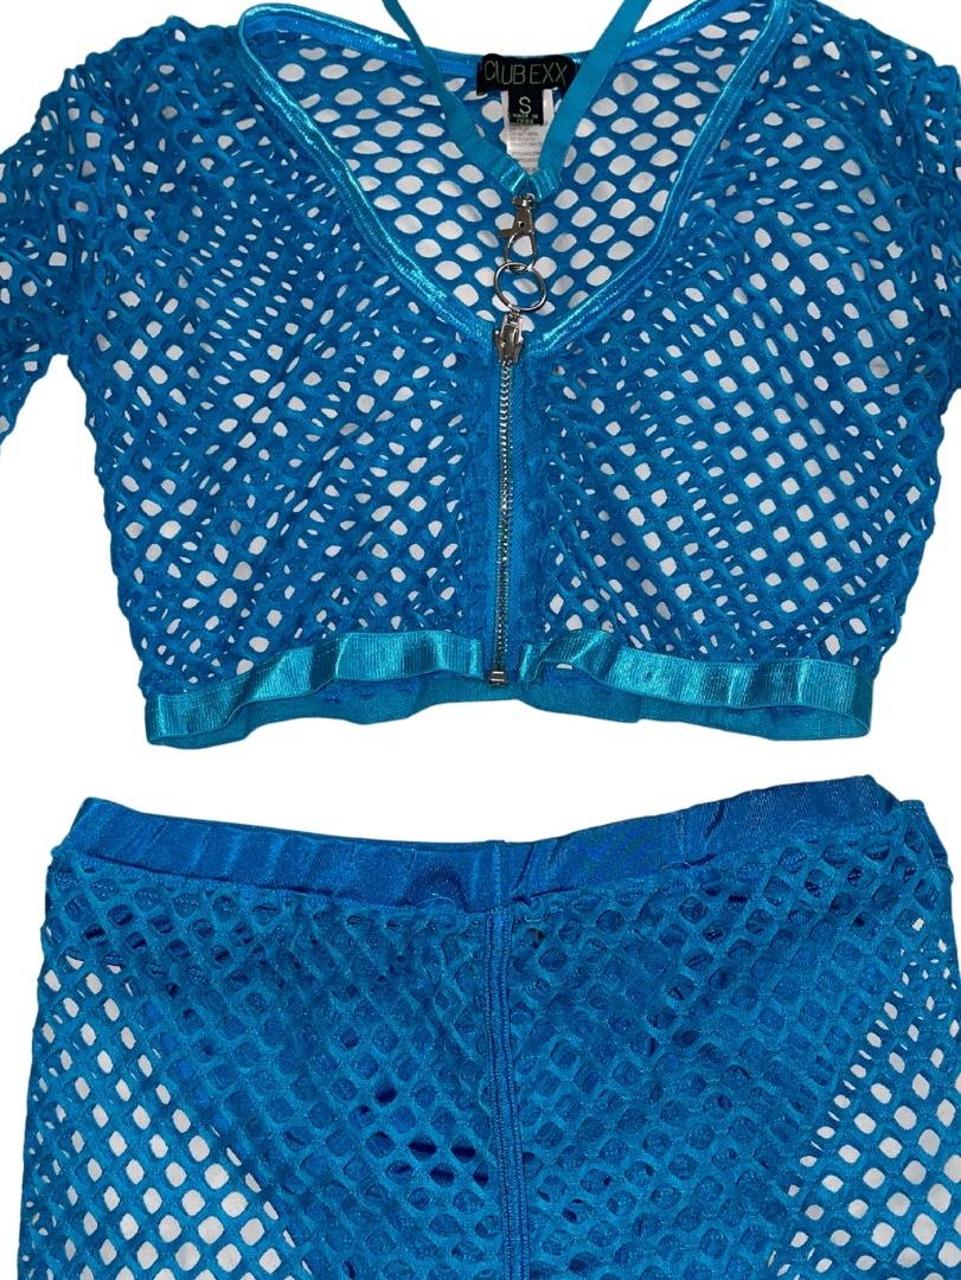 Club Exx Women's Blue Jumpsuit (2)